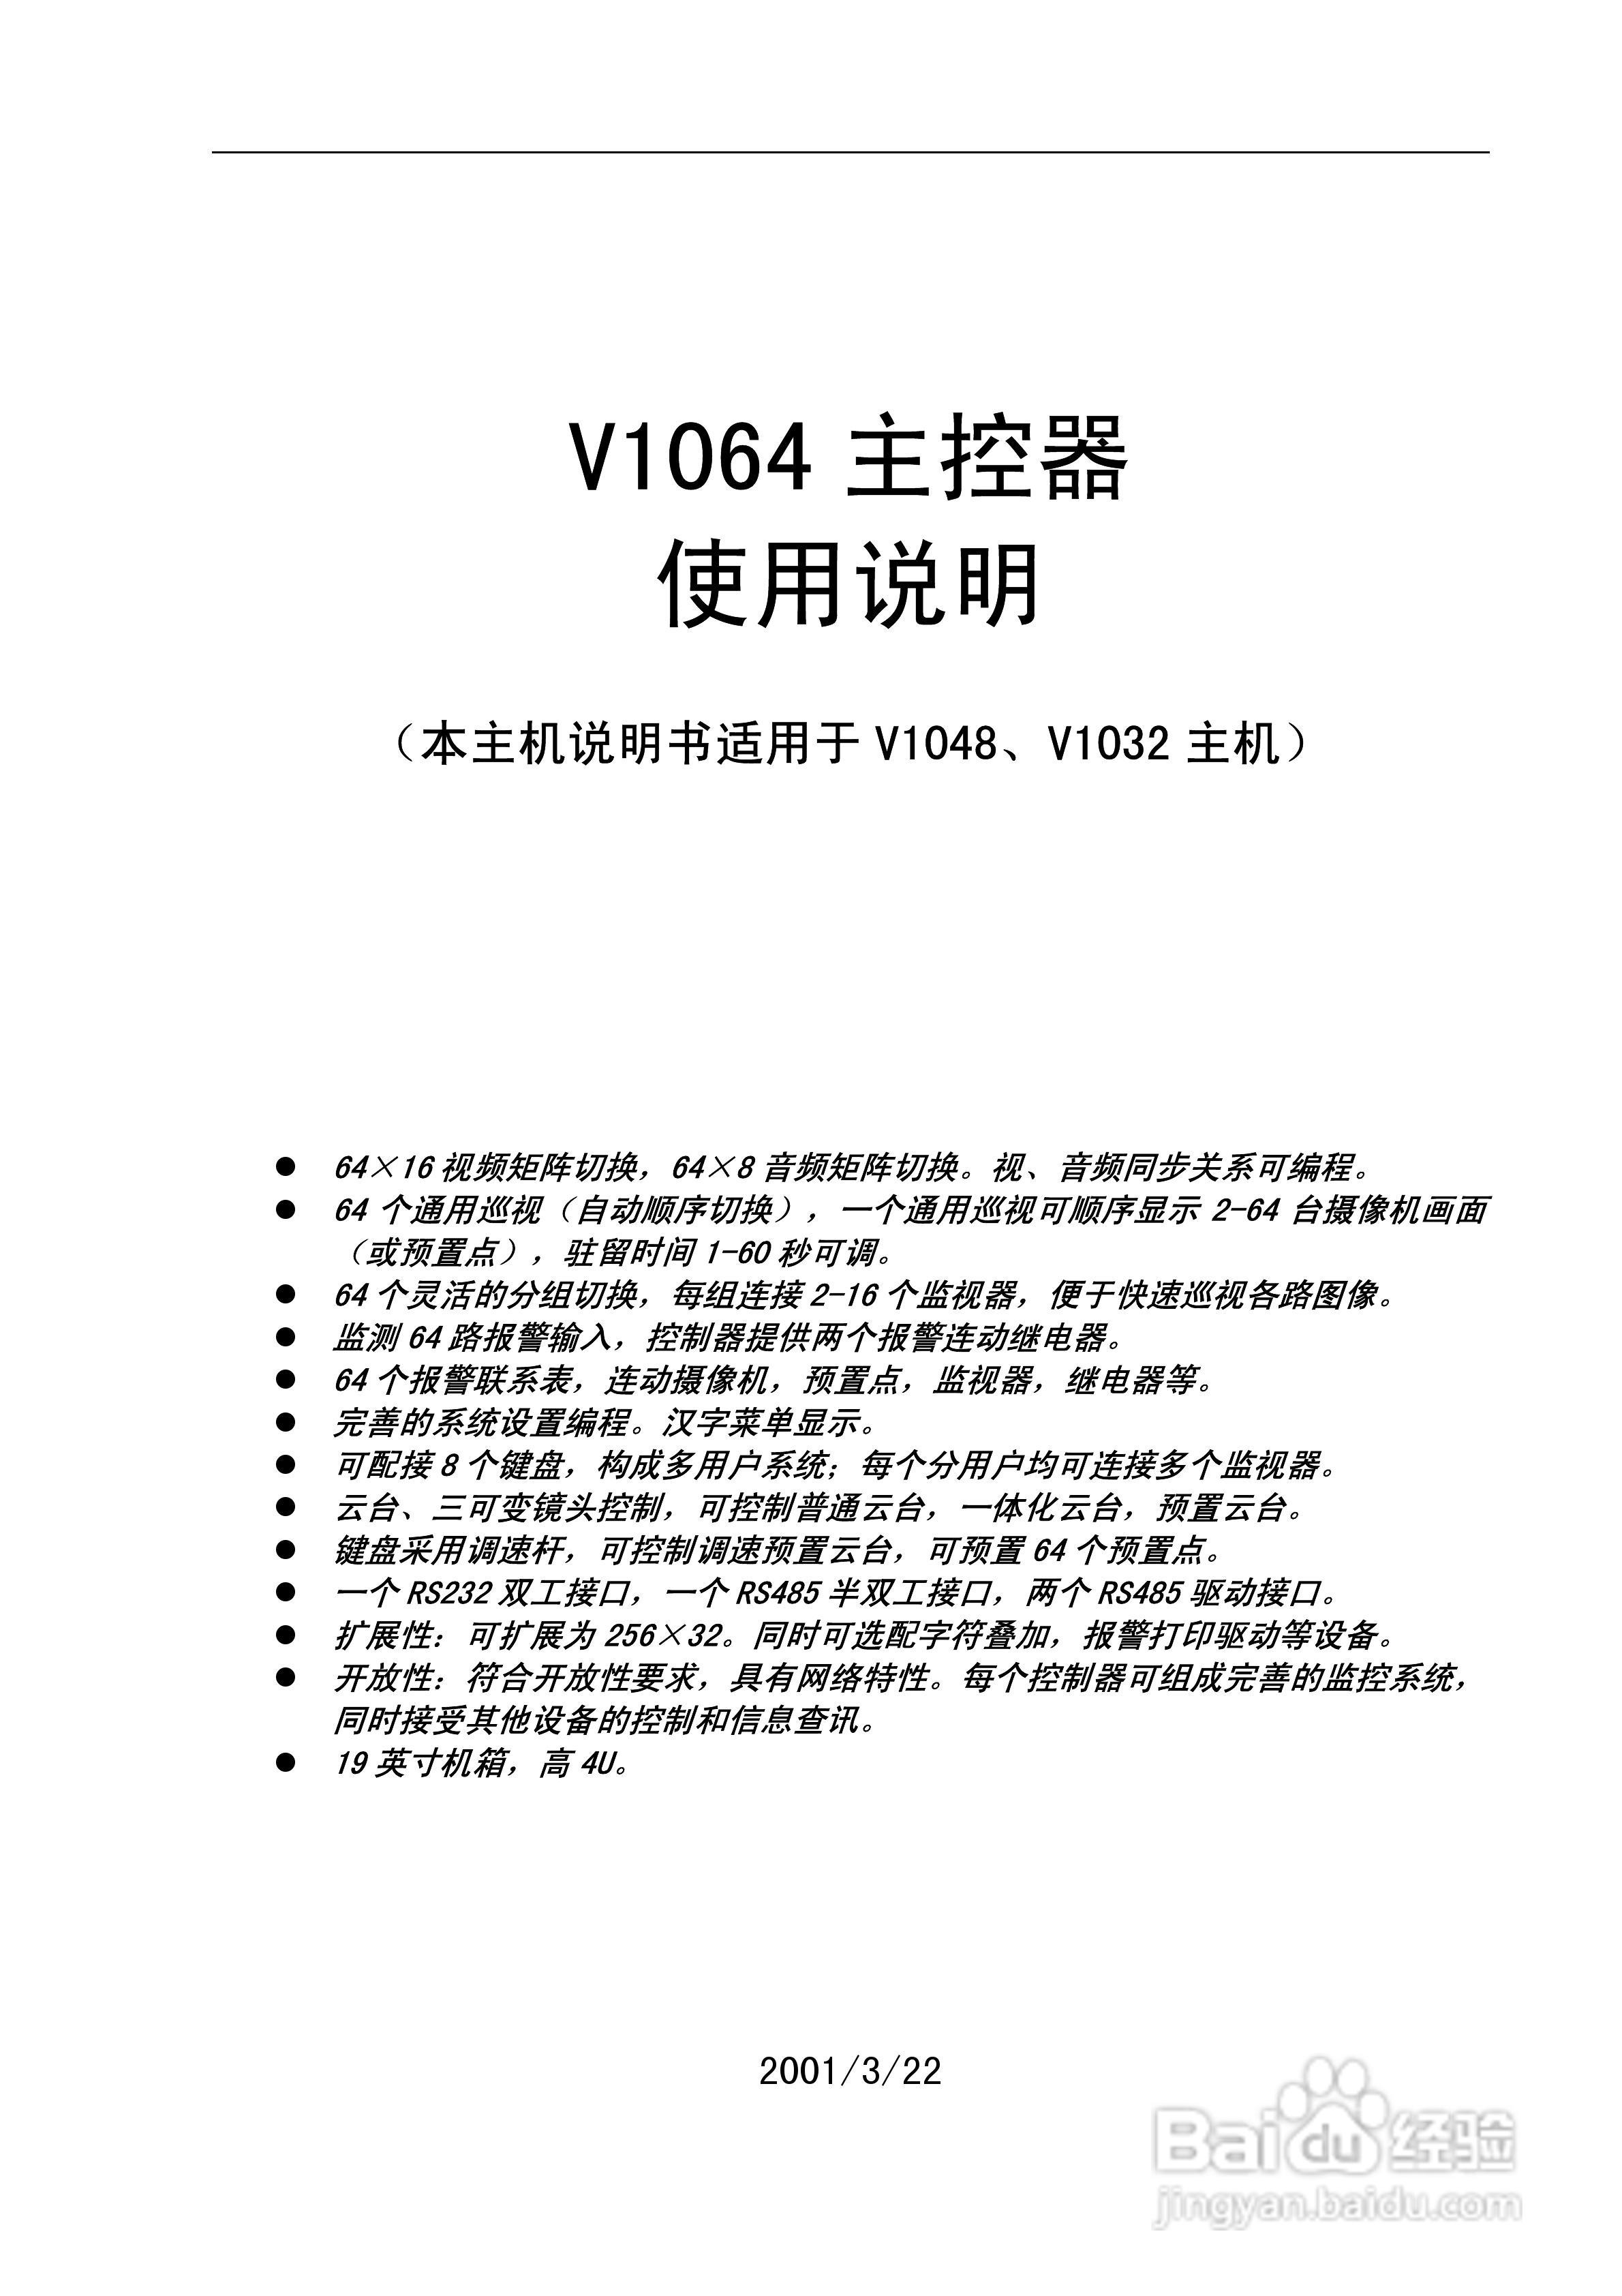 本篇为《v1064 主控器使用说明书》,主要介绍该产品的使用方法以及